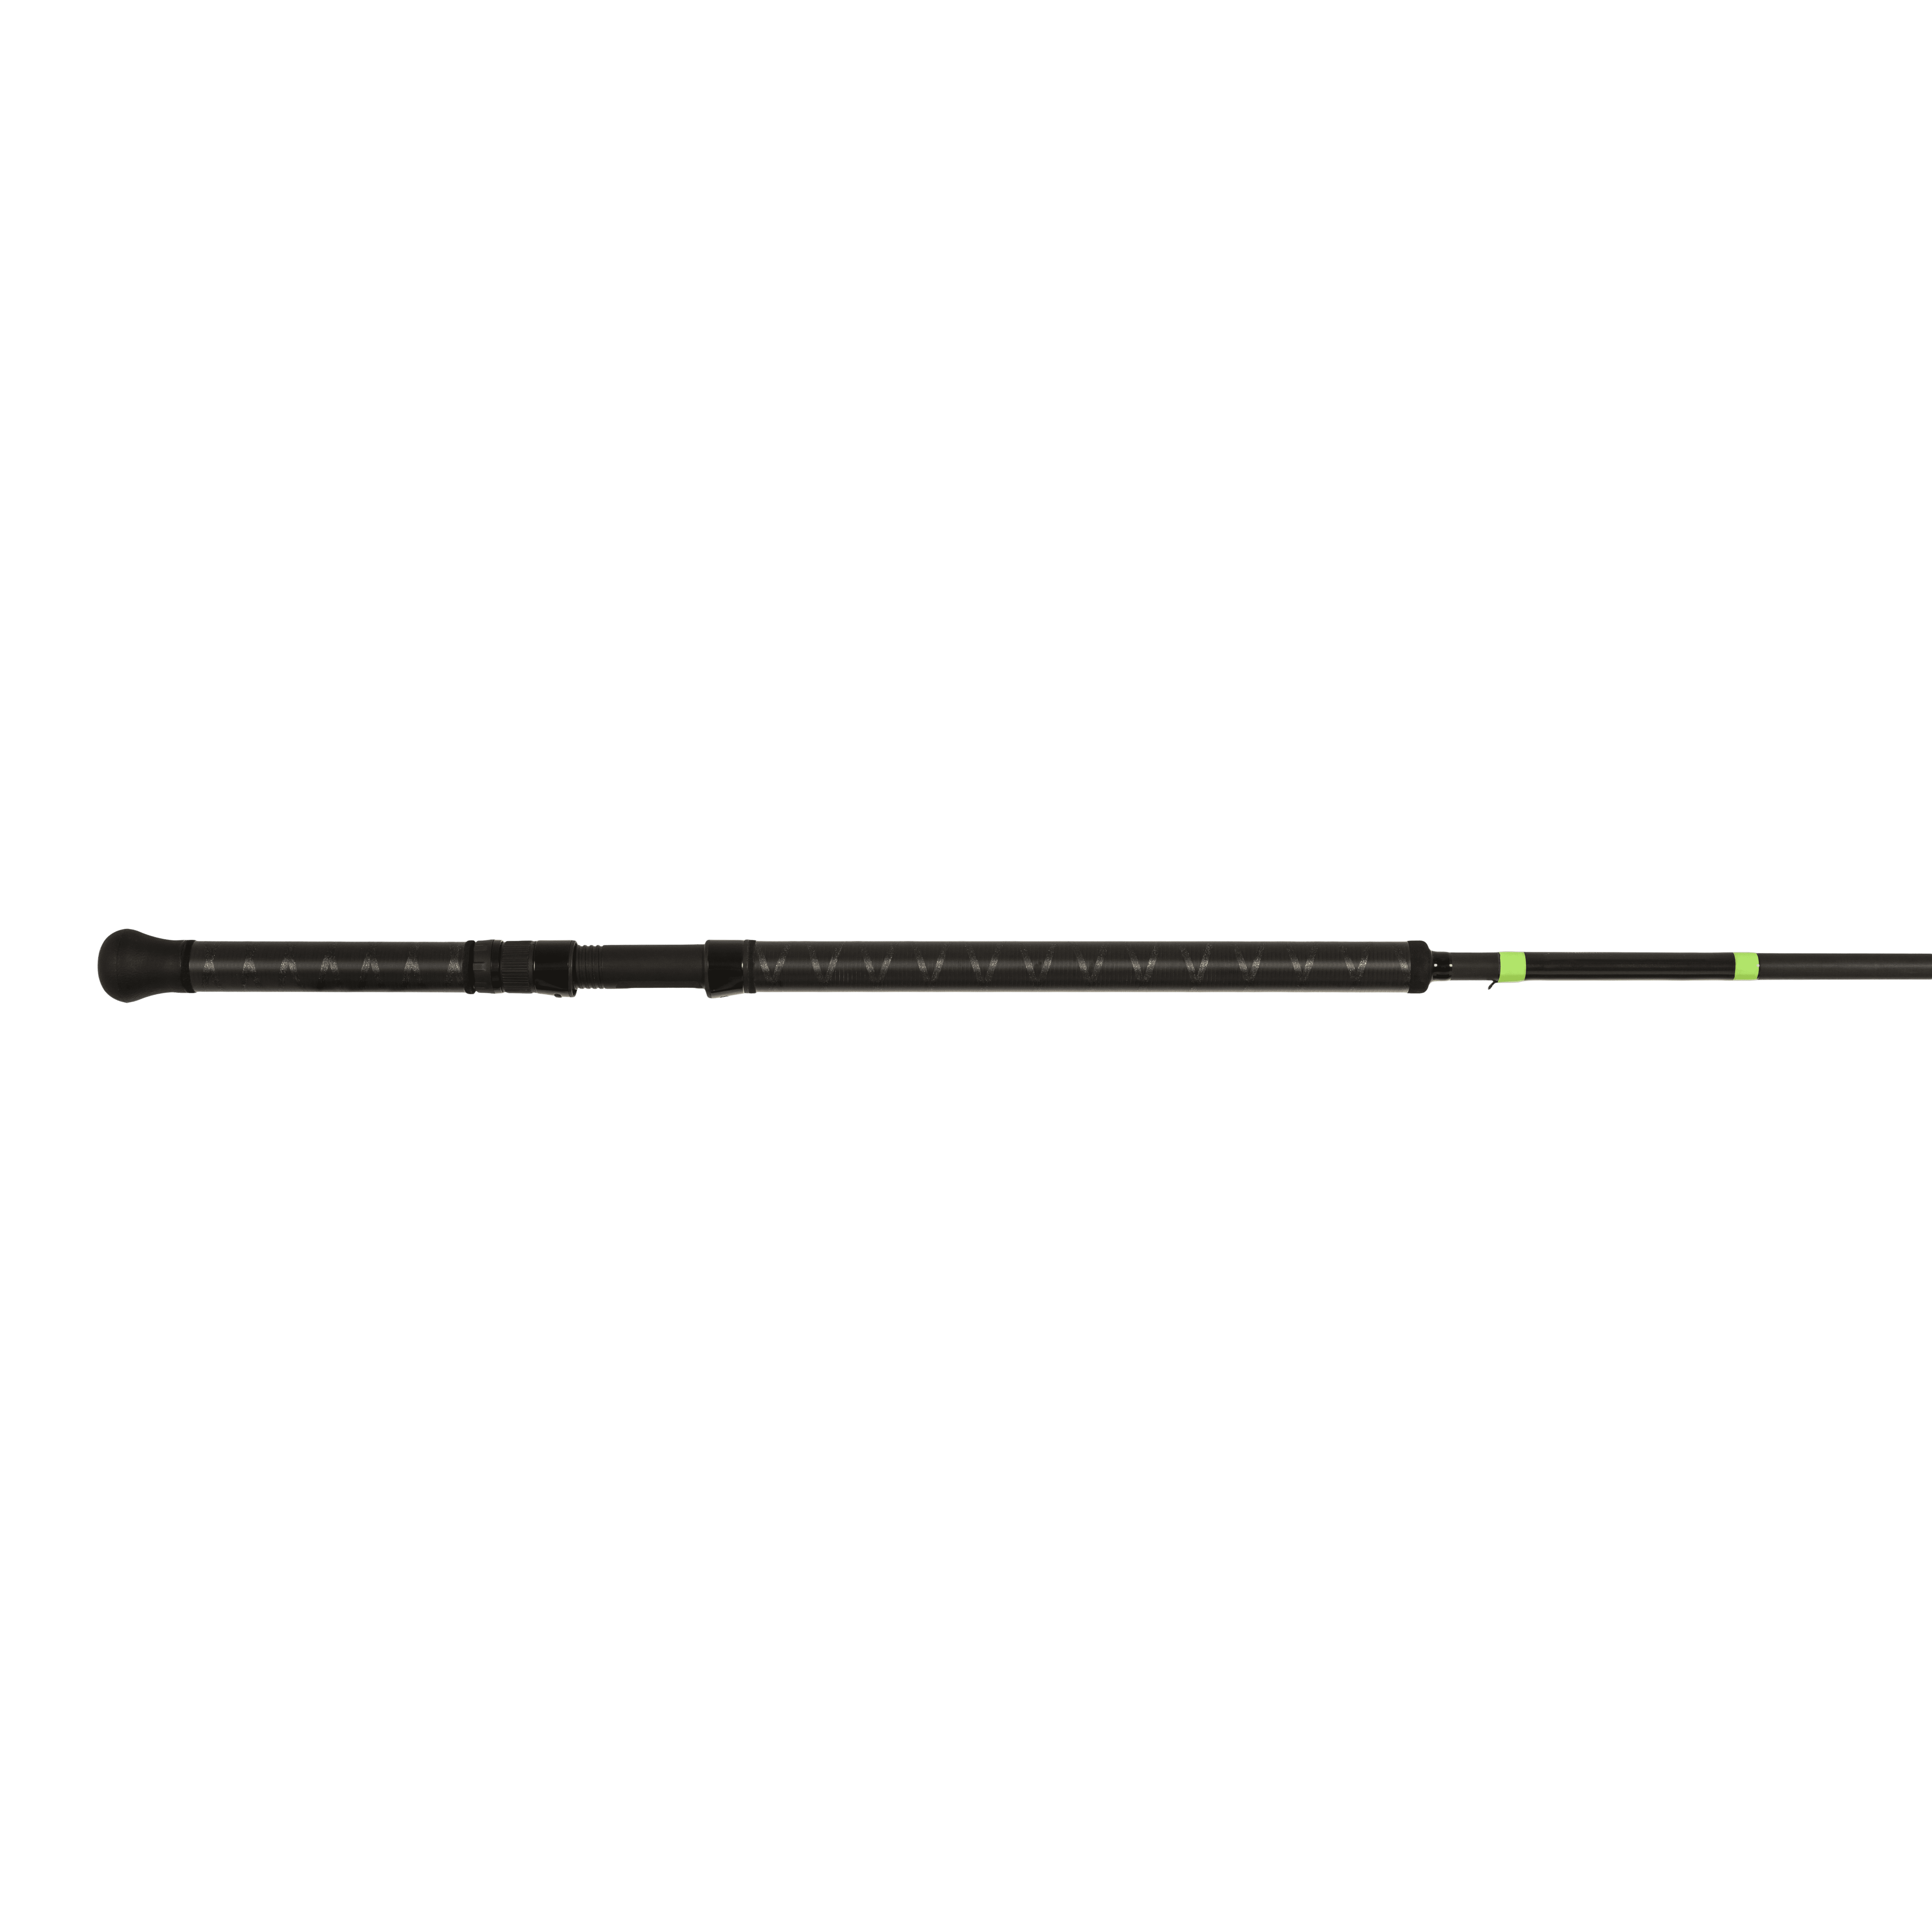 Loomis E6X Salmon 1264-2C SAR BC GH 10’6” Medium Heavy Casting Rod12774-01 G 